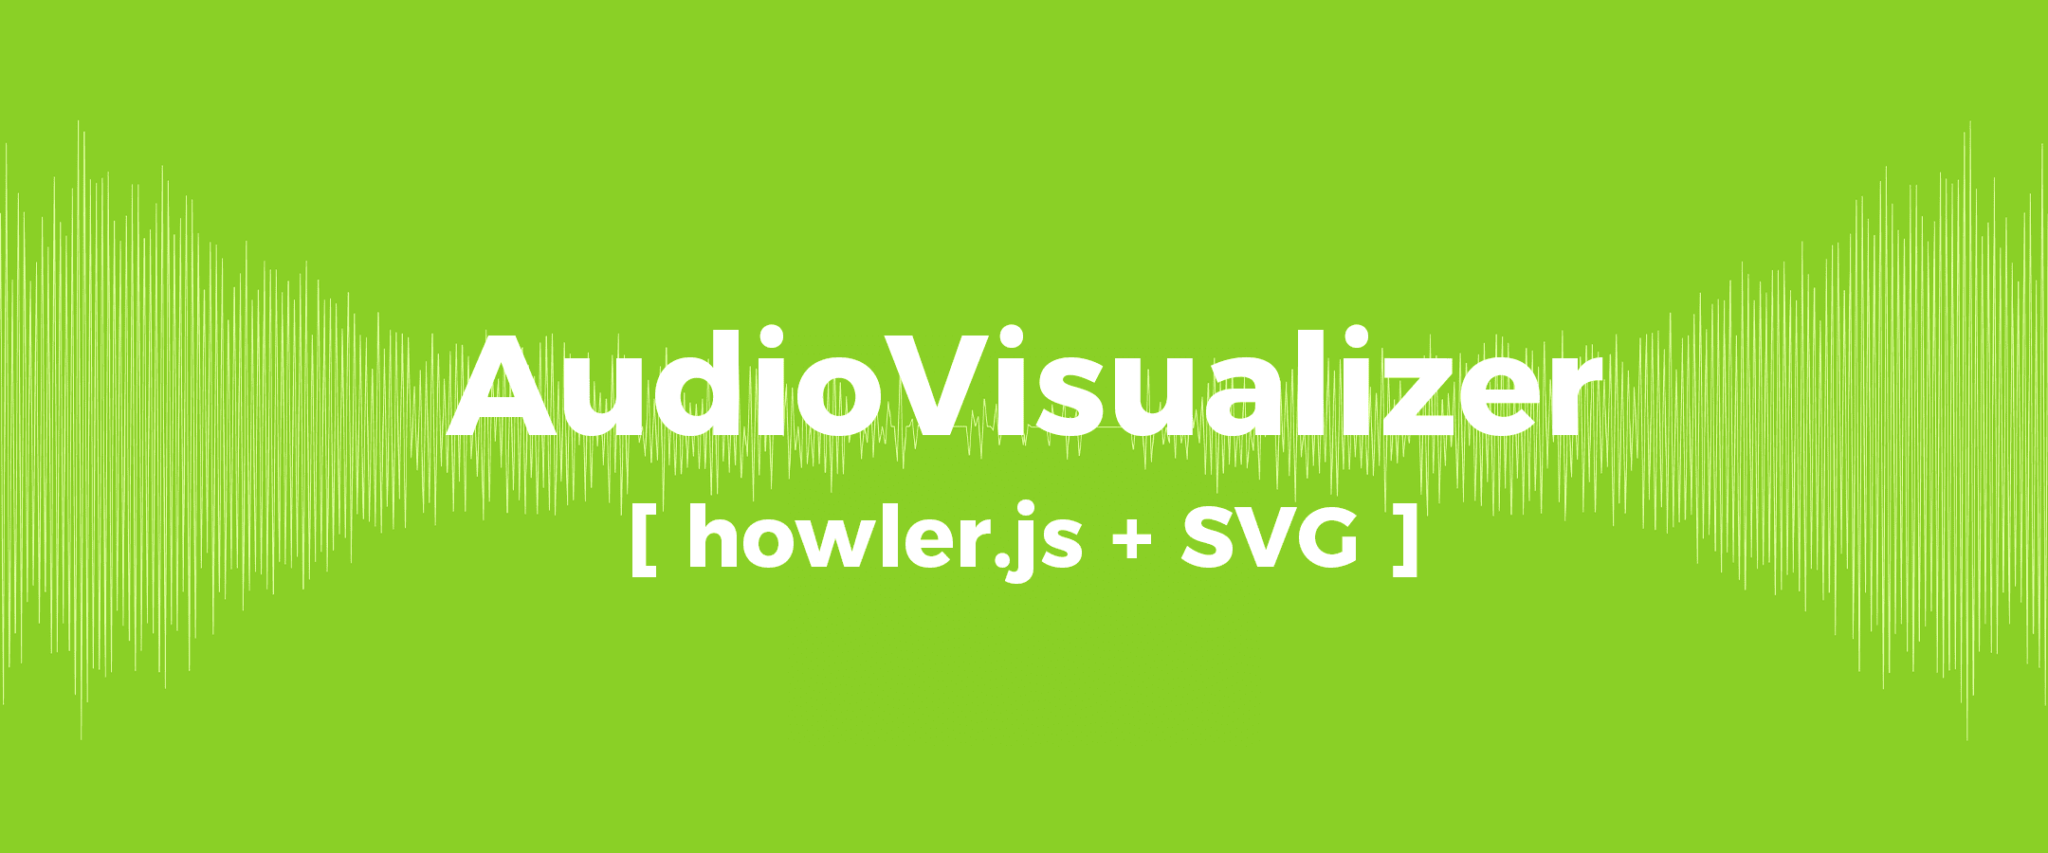 AudioVisualizer [ howler.js + SVG ]